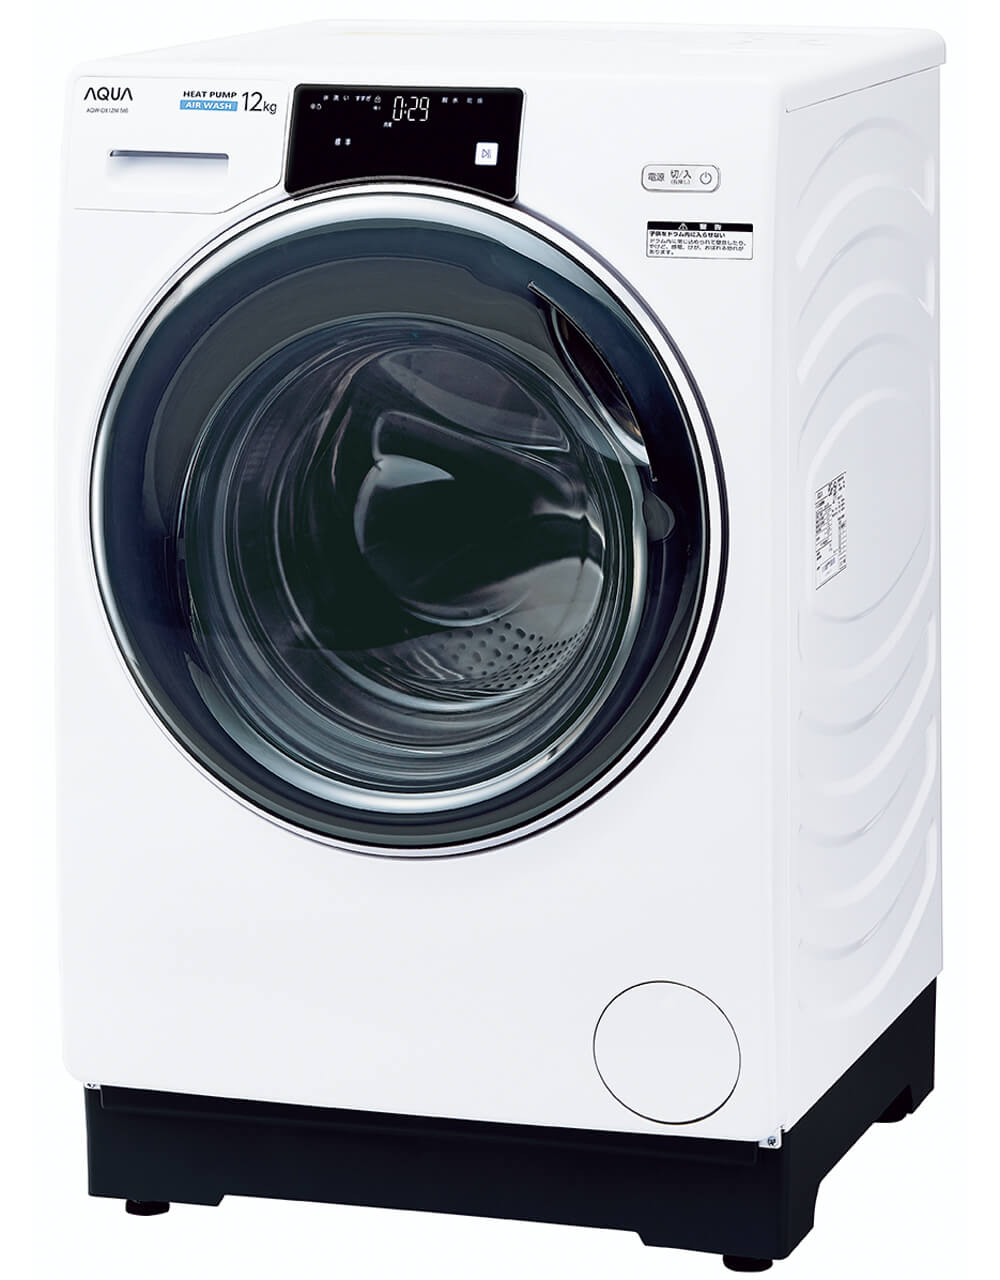 アクア ドラム式洗濯乾燥機「まっ直ぐドラム」 AQW-DX12M